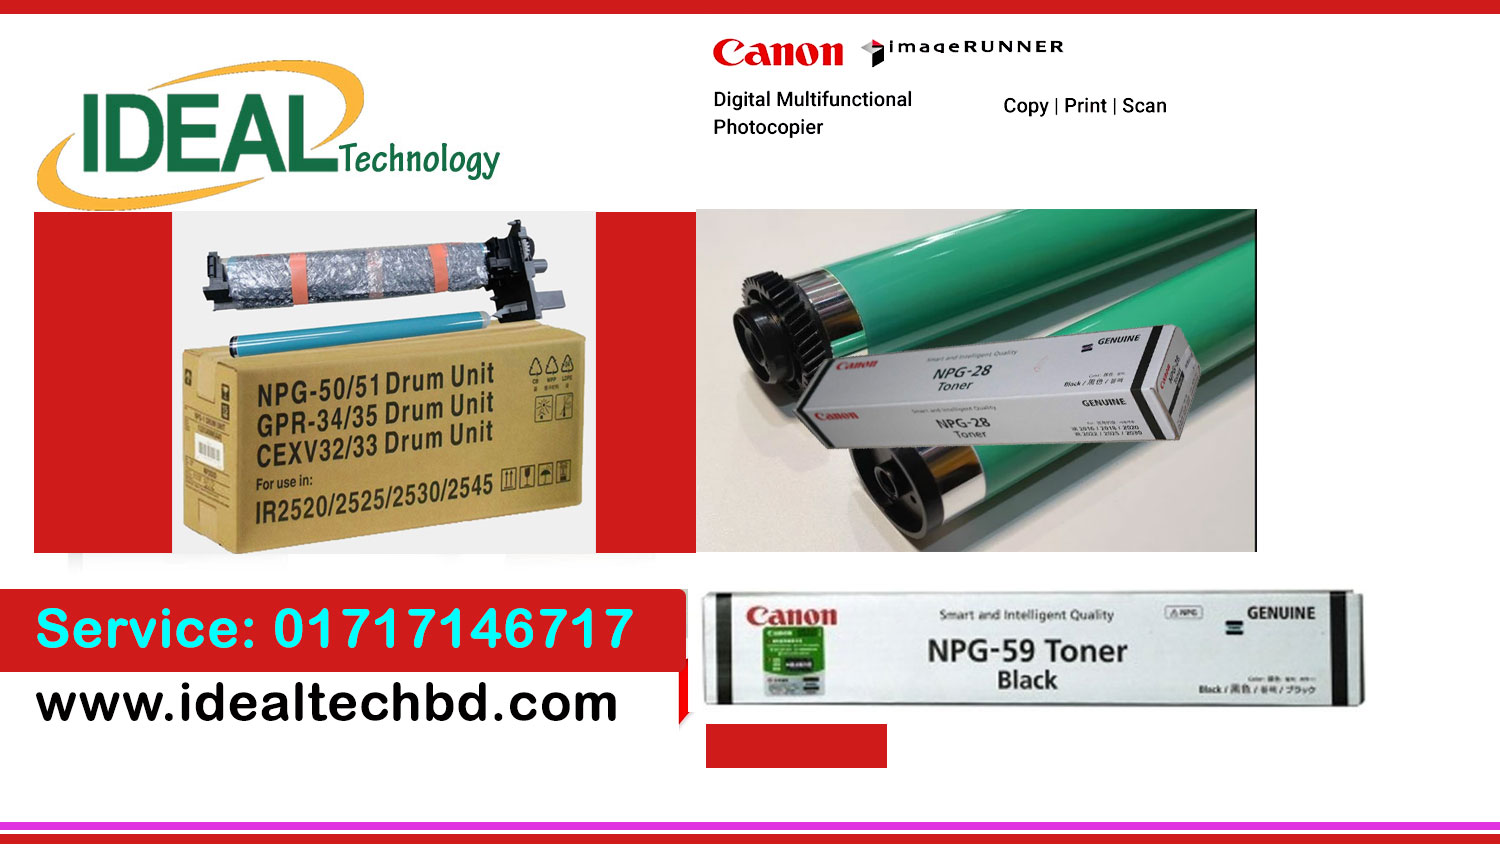 Buy Canon Photocopier Toner Cartridge low Price